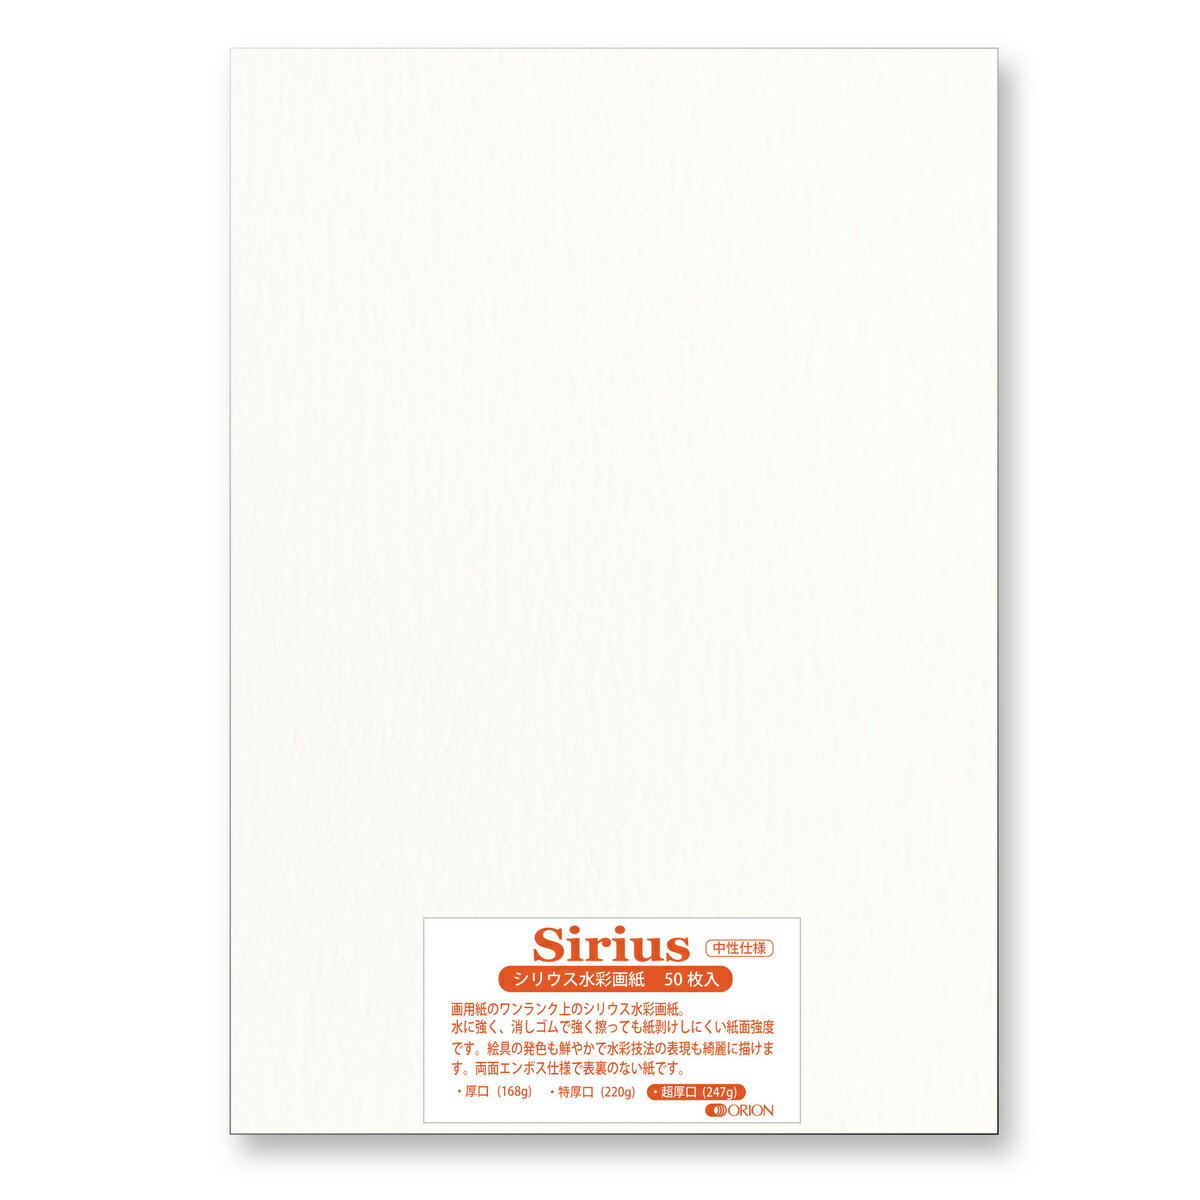 画用紙 シリウス水彩紙 超厚口 247g 50枚入 A2サイズ オリオン 水彩画用紙 594mm×420mm